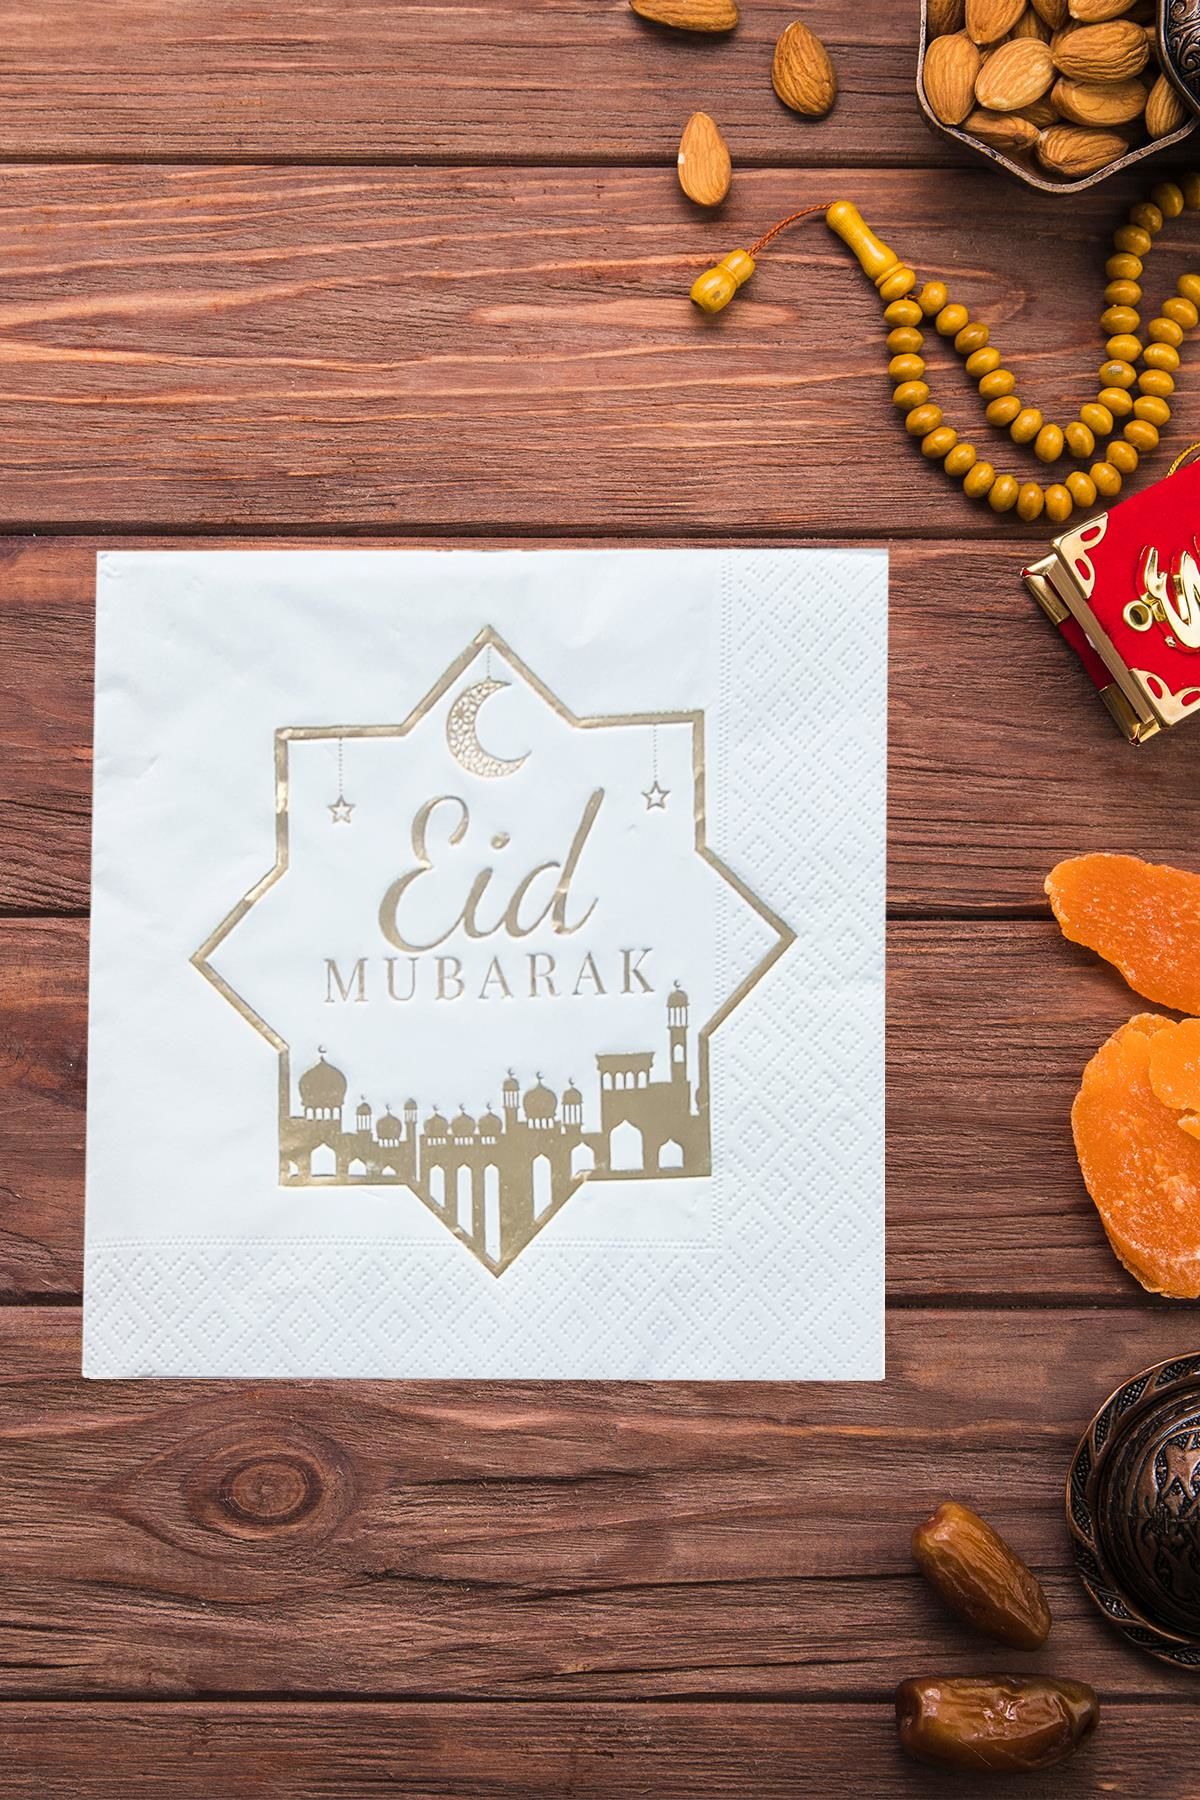 Eid Mubarak Altın Varak Yaldız Gold Baskılı İftar Sofrası Sunum Peçetesi 16lı Paket Ramazan Süsleri